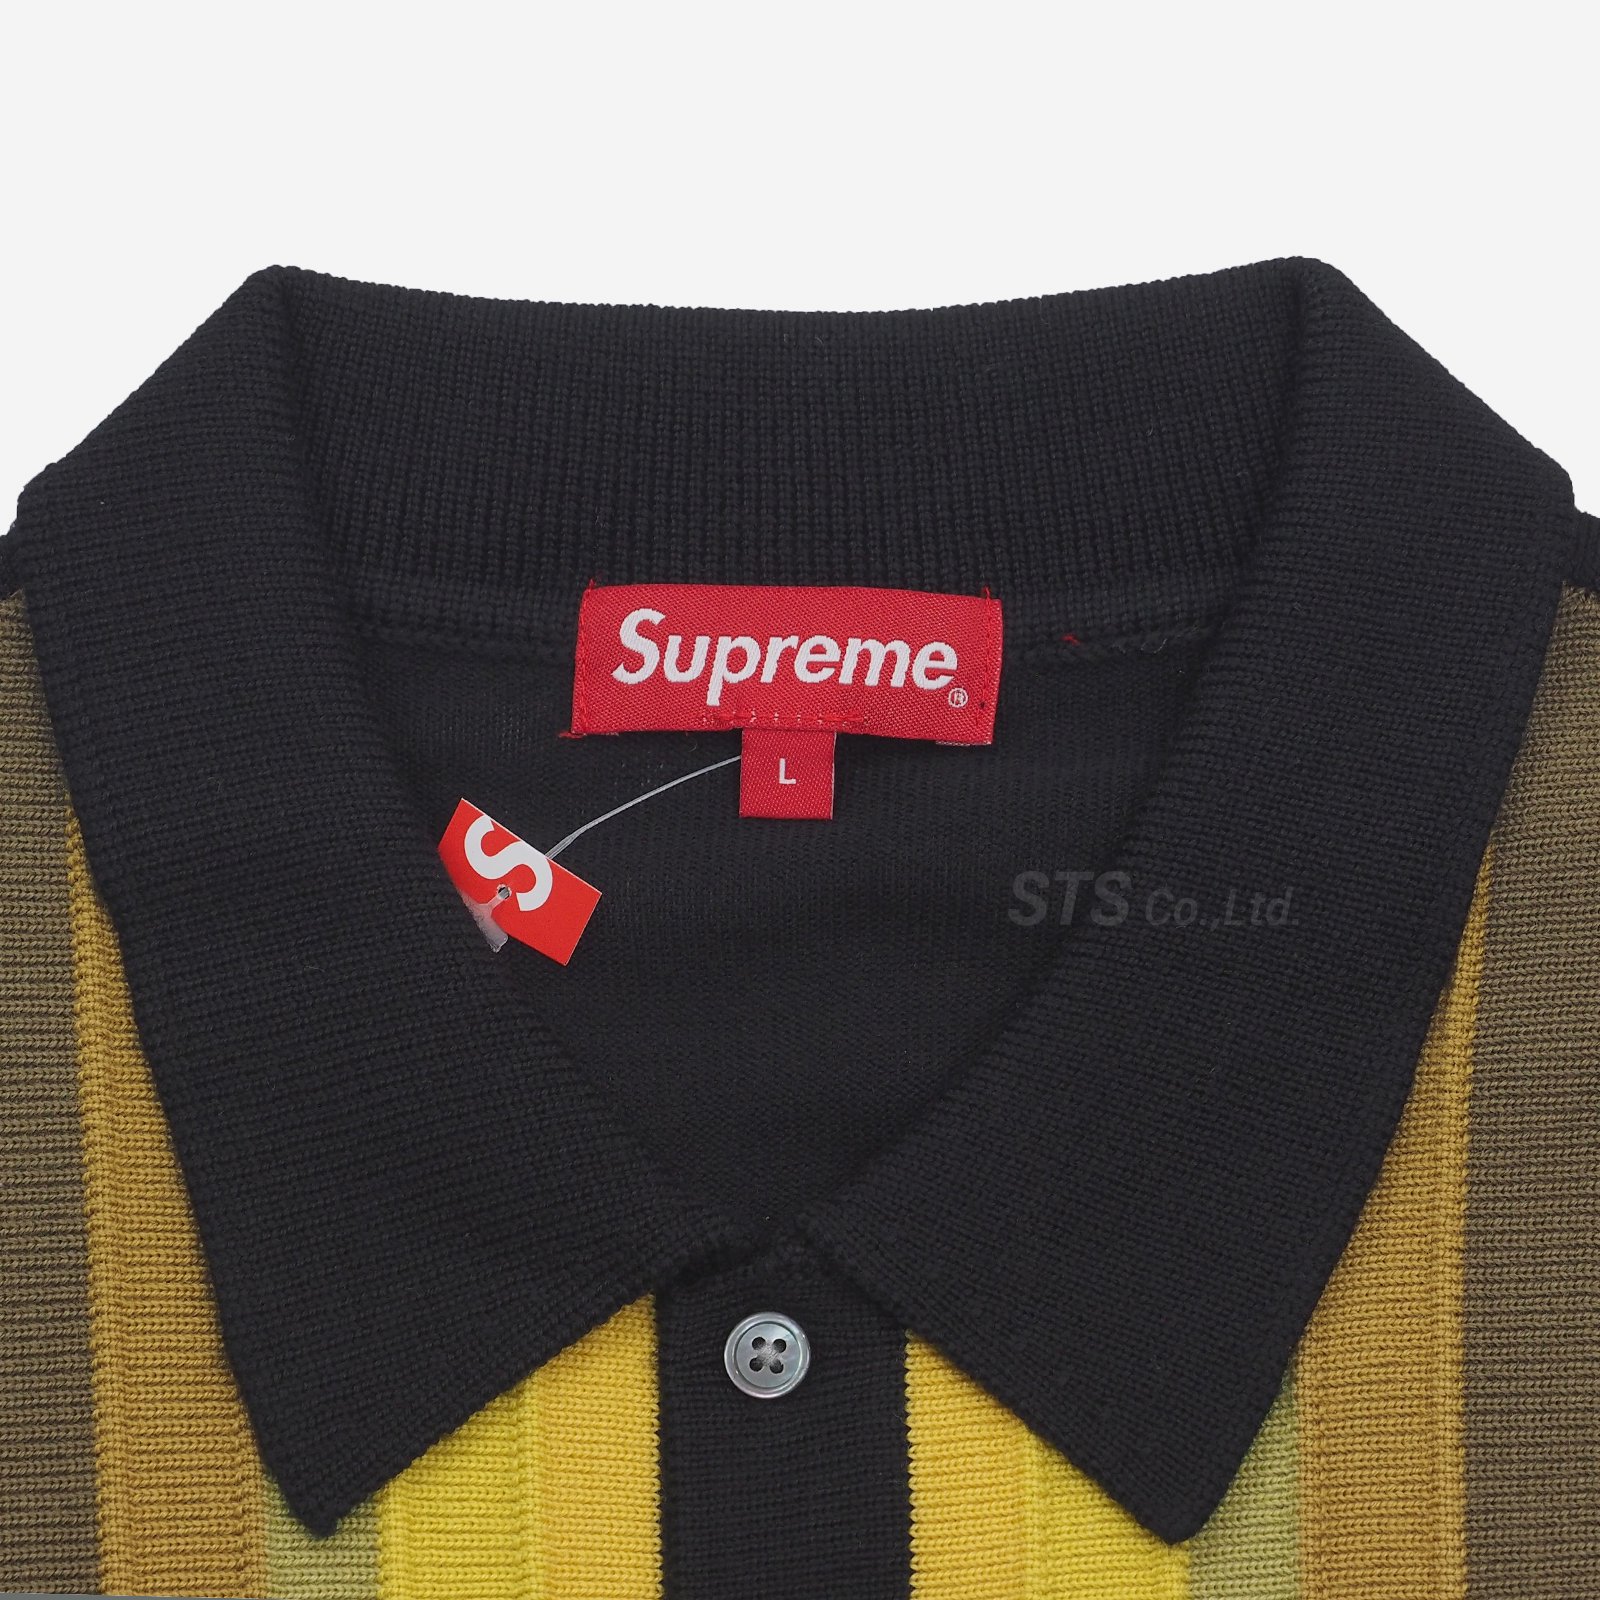 L supreme corner stripe polo sweater 新品